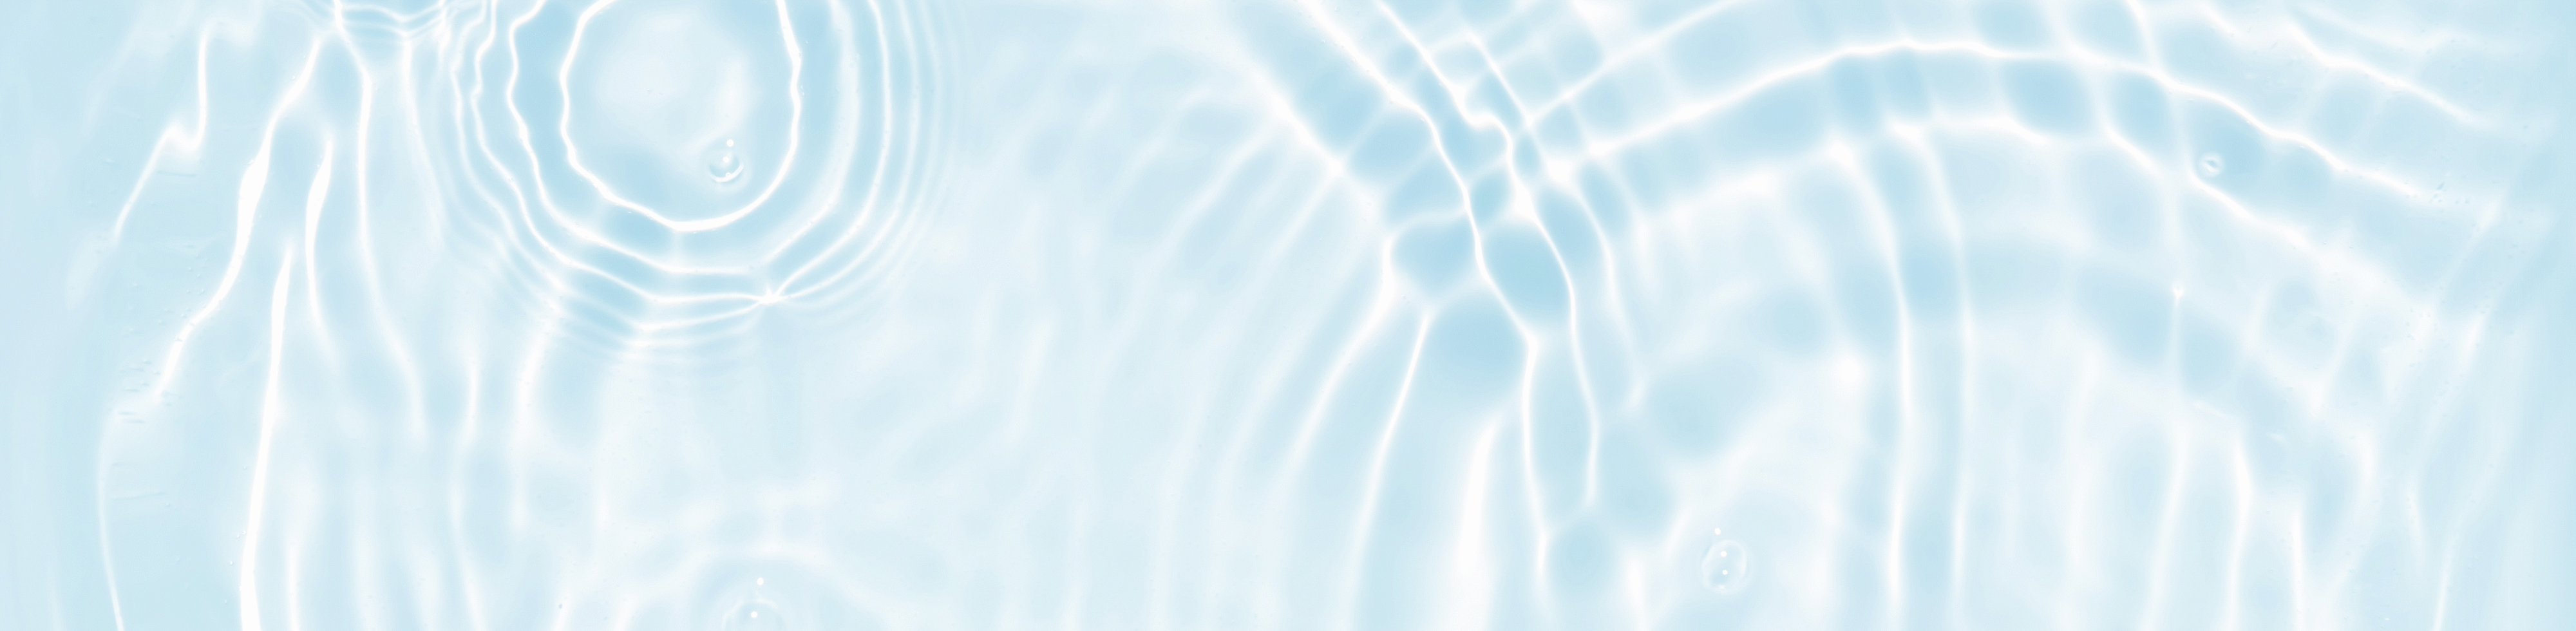 Imagen de agua con ondas